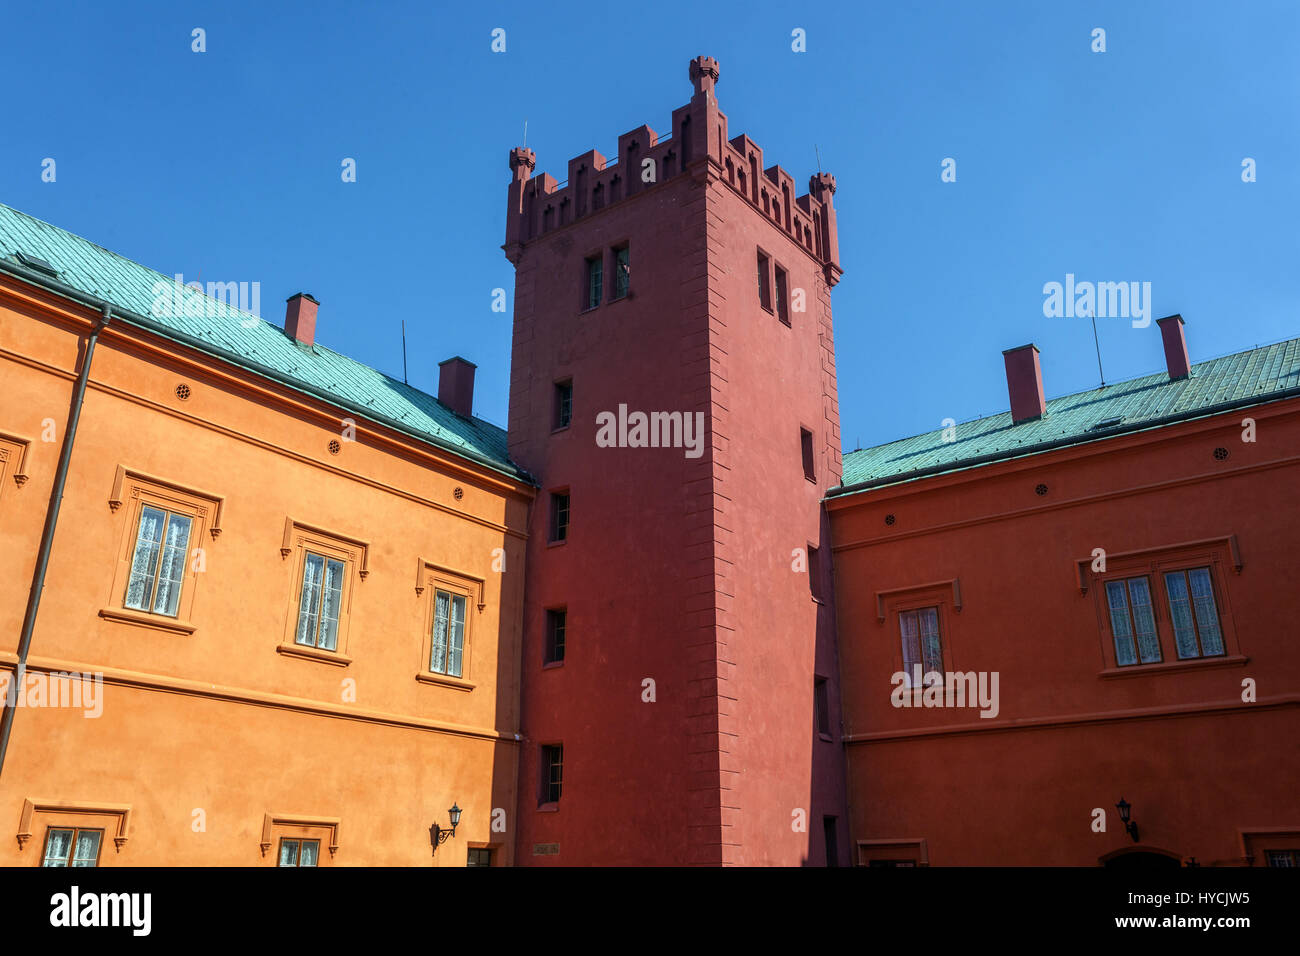 Klasterec castello è un edificio barocco sulle fondamenta di una fortezza rinascimentale, Klasterec Nad Ohri, Boemia settentrionale, Repubblica Ceca, Europa Foto Stock